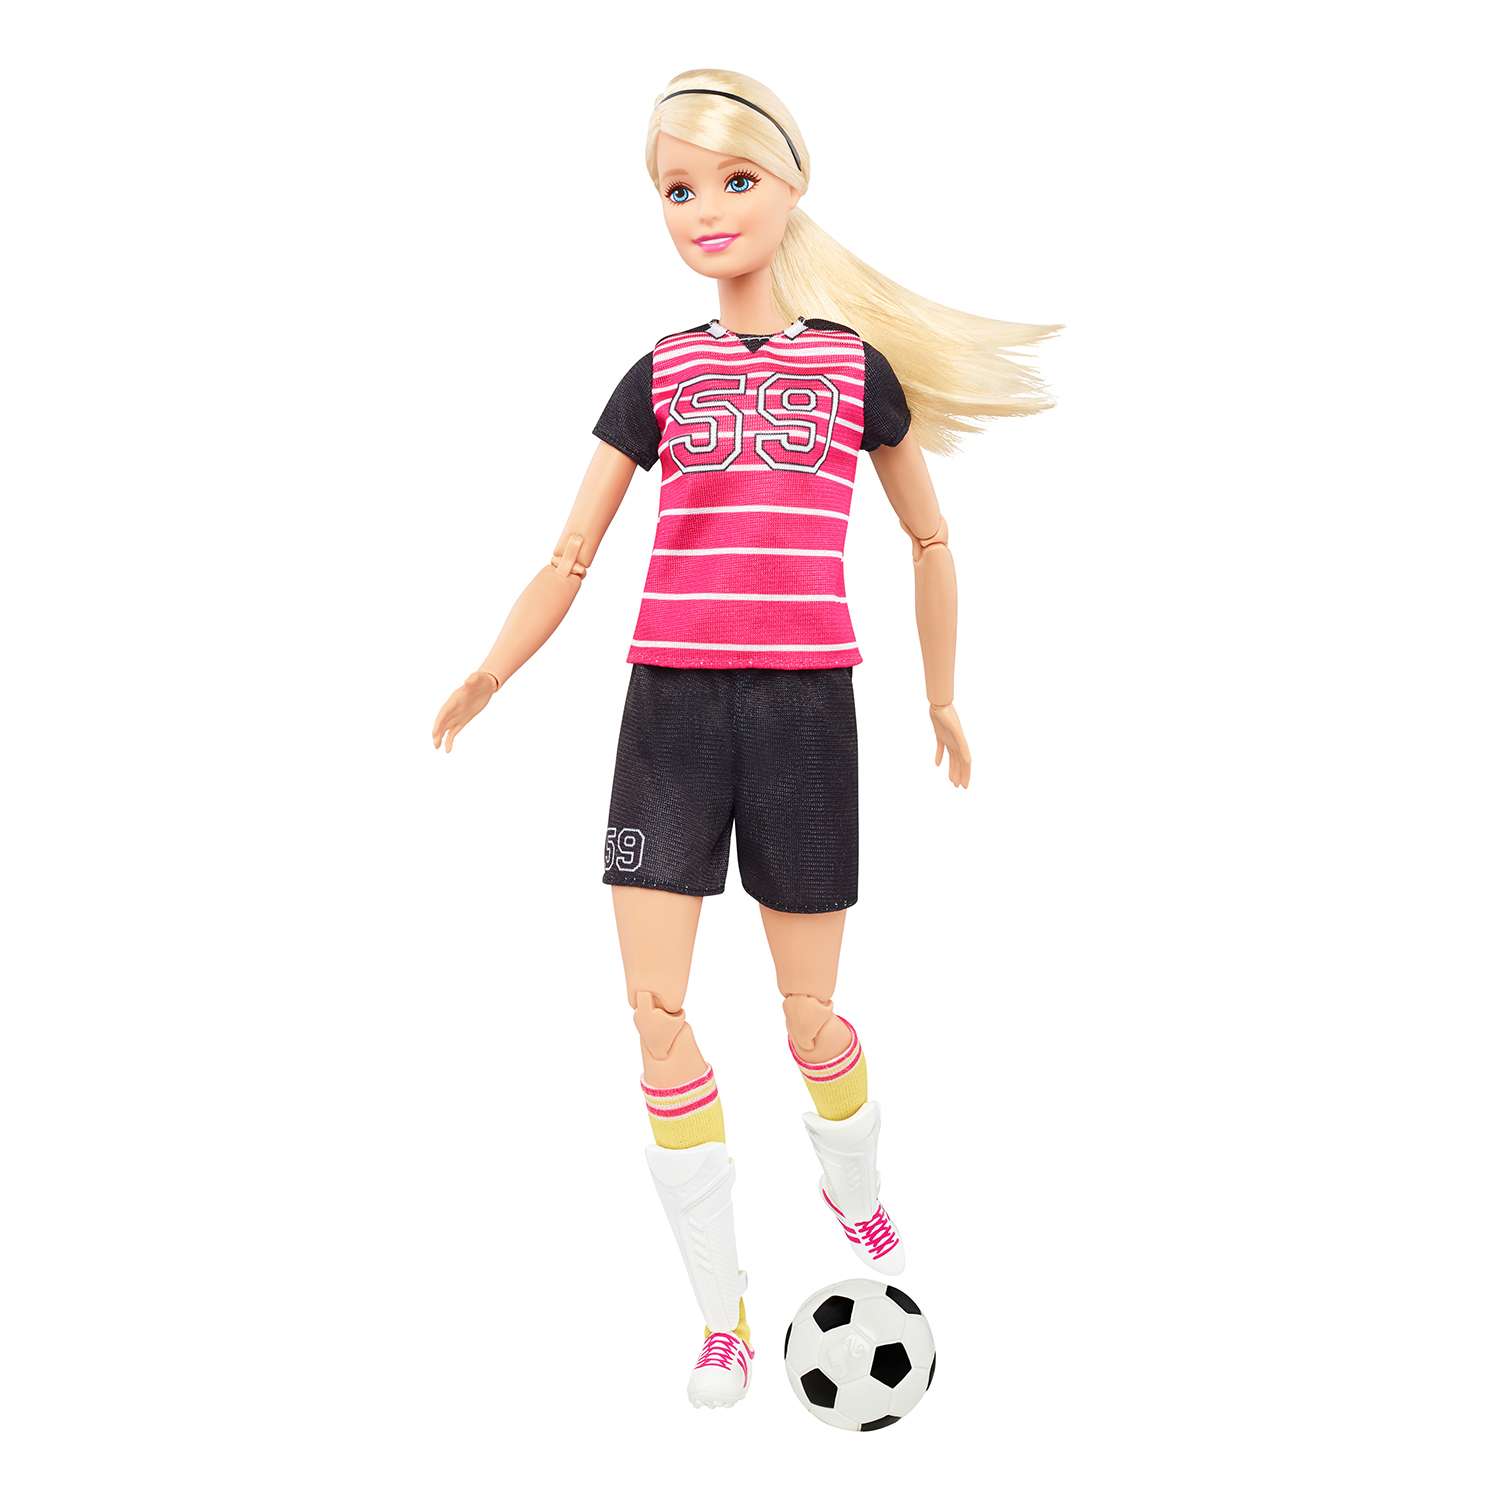 Куклы-спортсменки Barbie Футболистка Блондинка DVF68/DVF69 - фото 7